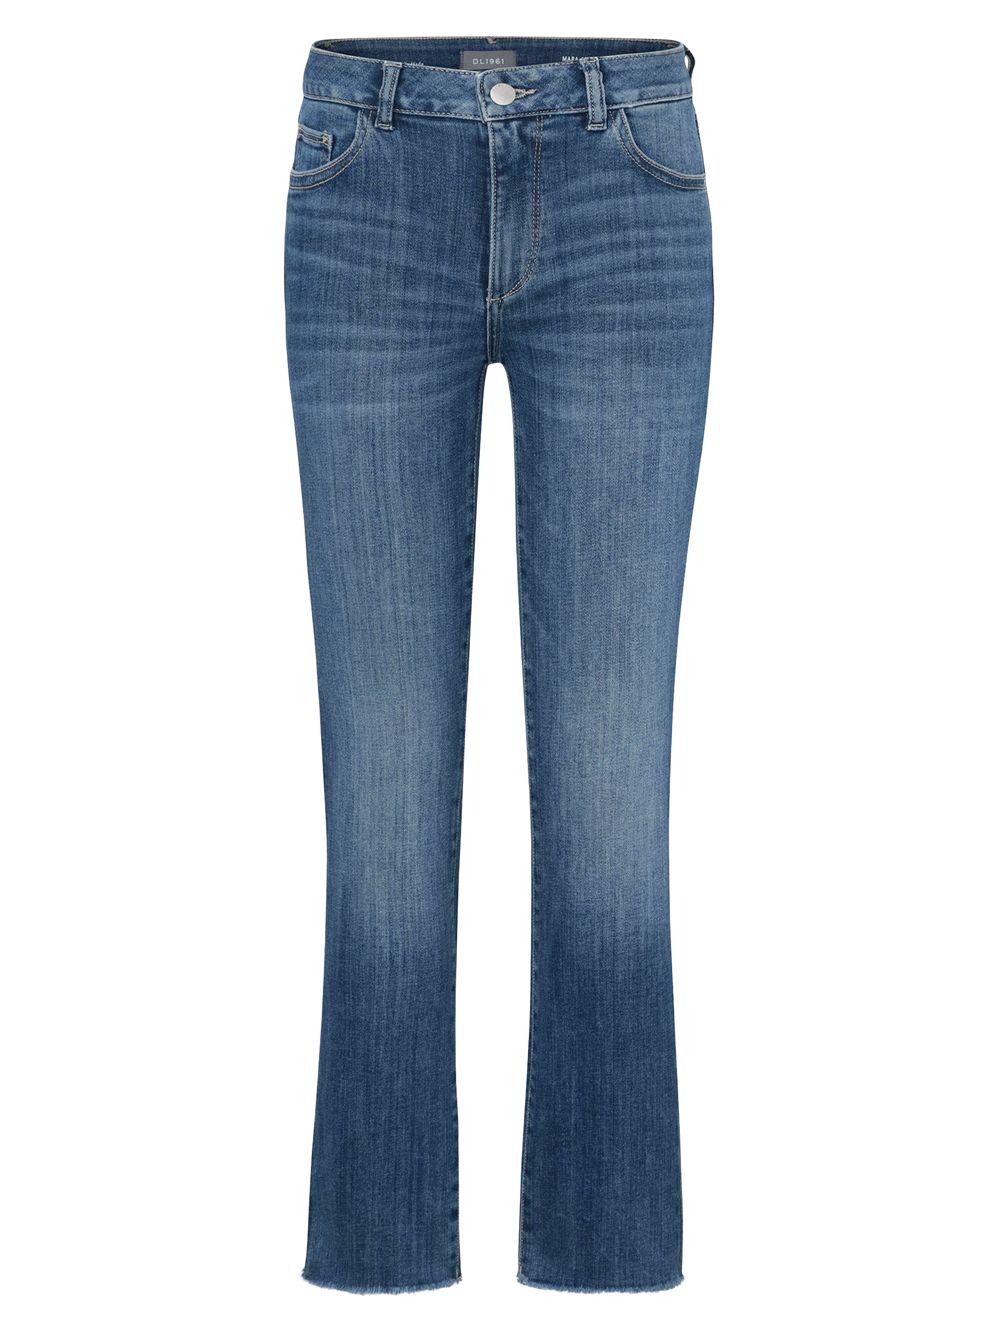 Прямые джинсы до щиколотки со средней посадкой Mara Instasculpt DL1961 Premium Denim